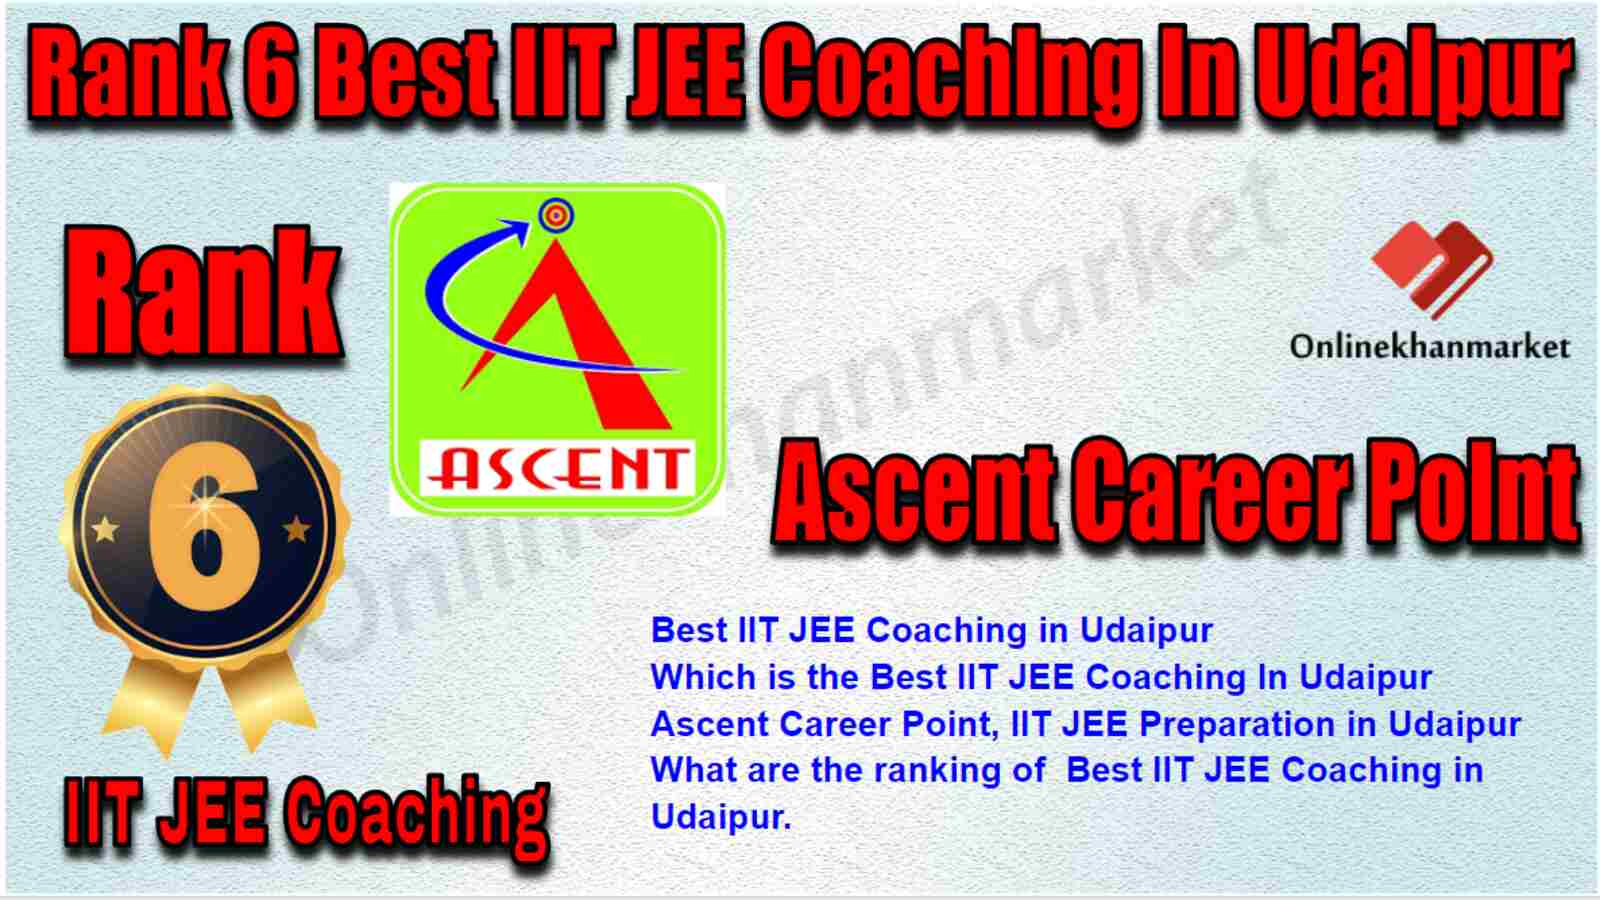 Rank 6 Best IIT JEE Coaching in Udaipur